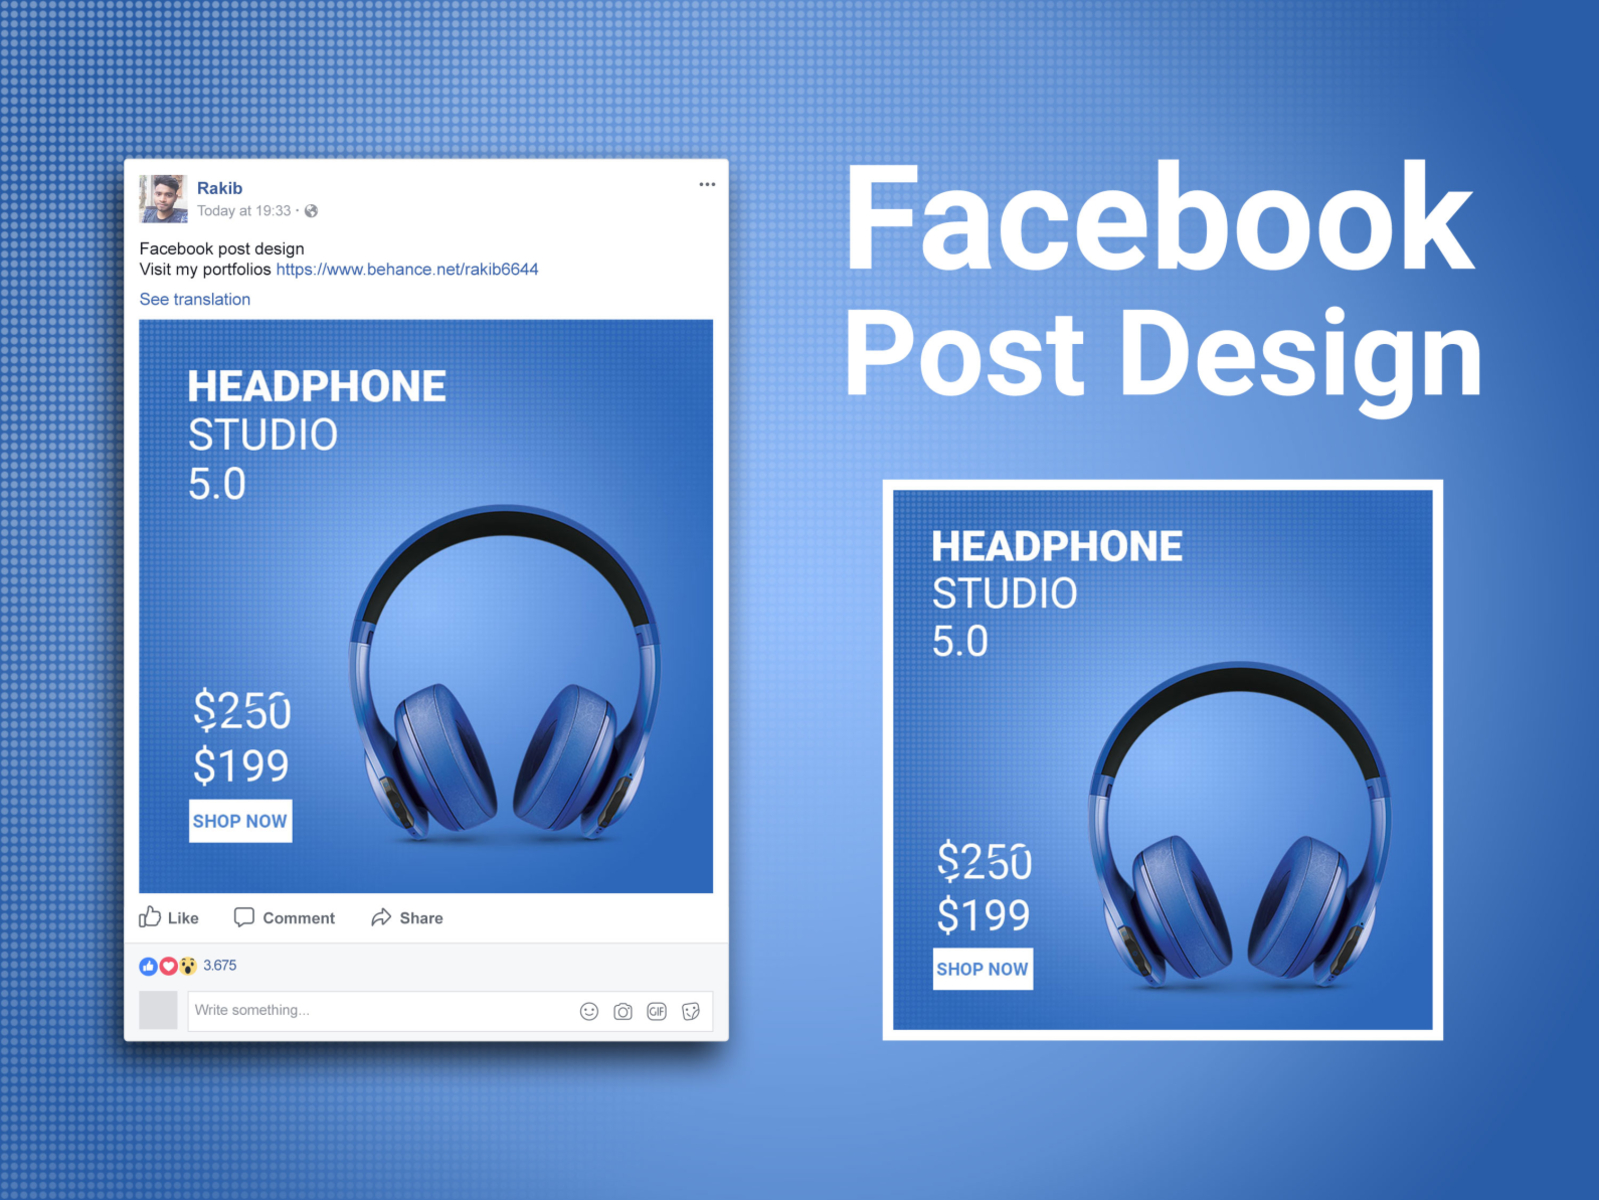 Facebook posting. Post Design. Facebook Post. Product Post Design. Facebook Post Design.